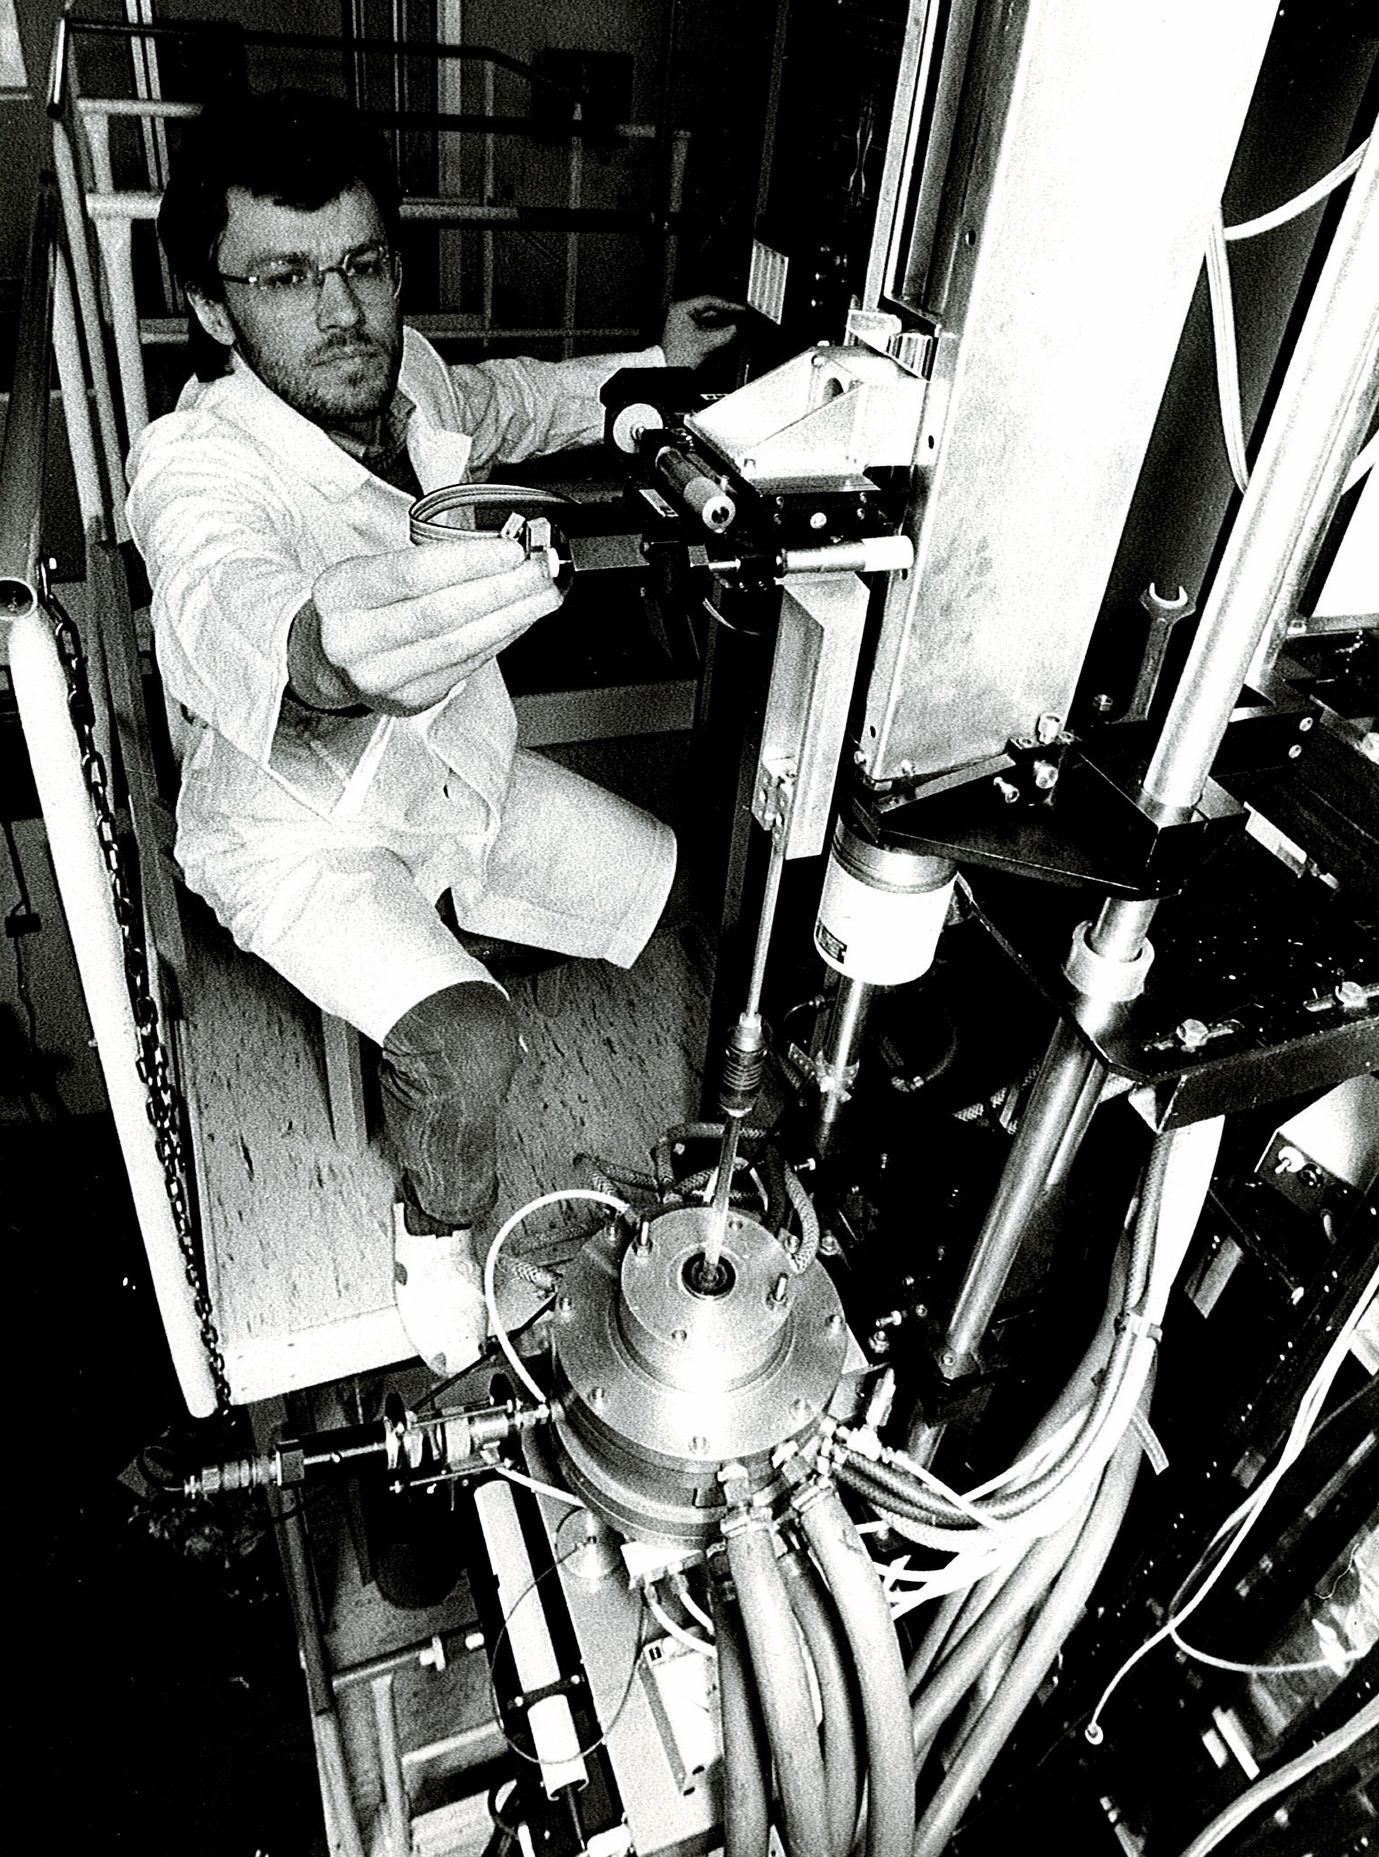 Výroba a výzkum - optický kabel, Akademie věd, věda, optický internet - archivní foto